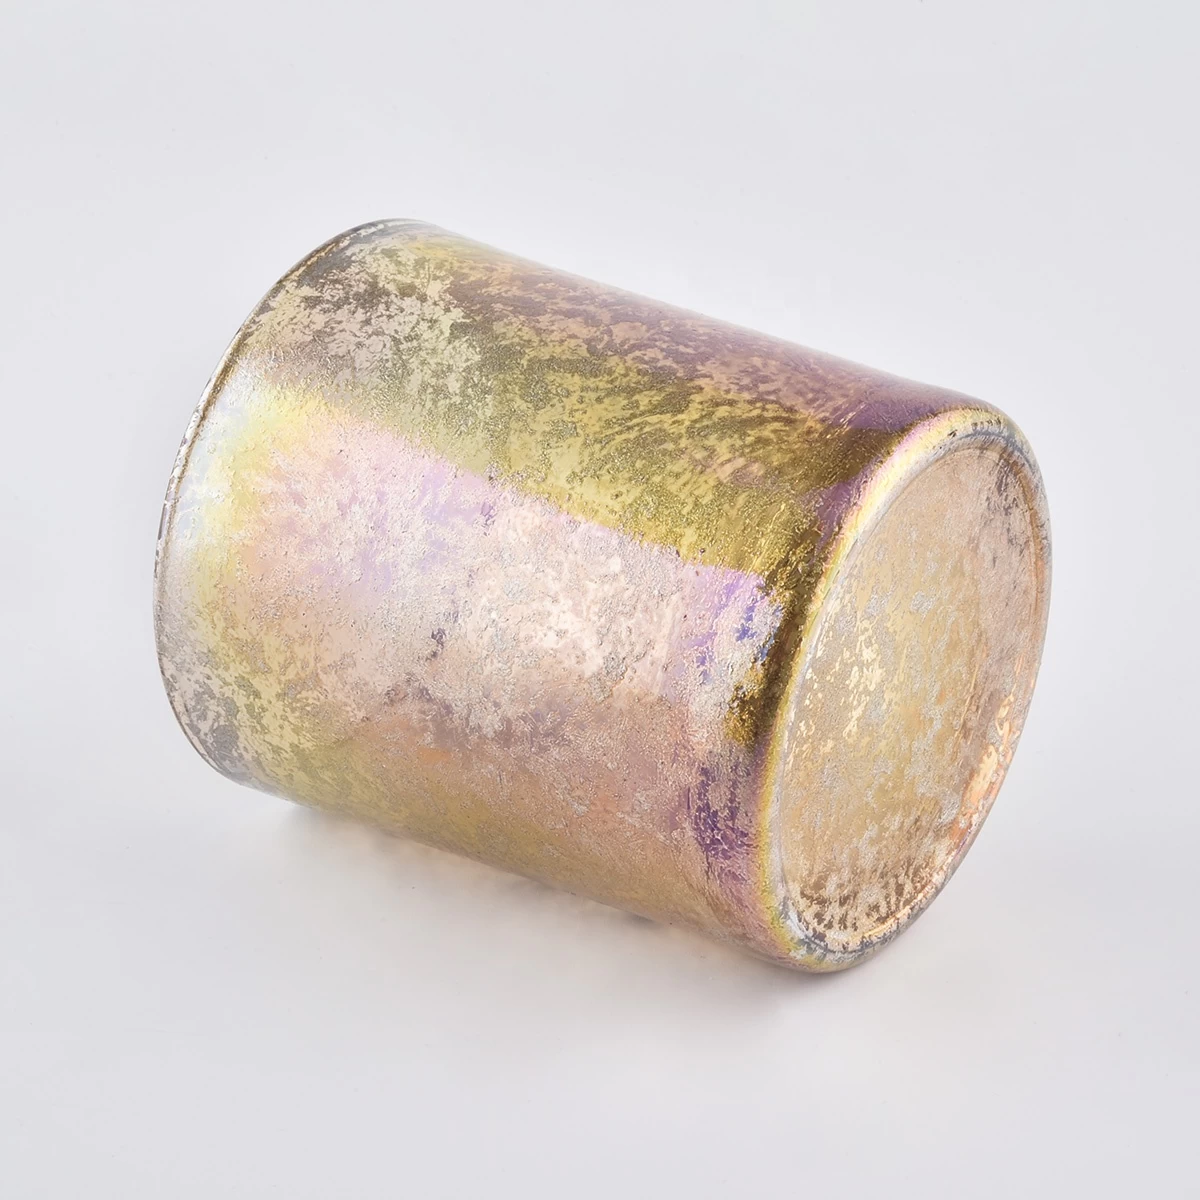 Bulk luxury votive custom finish cylinder gold candle glass holders